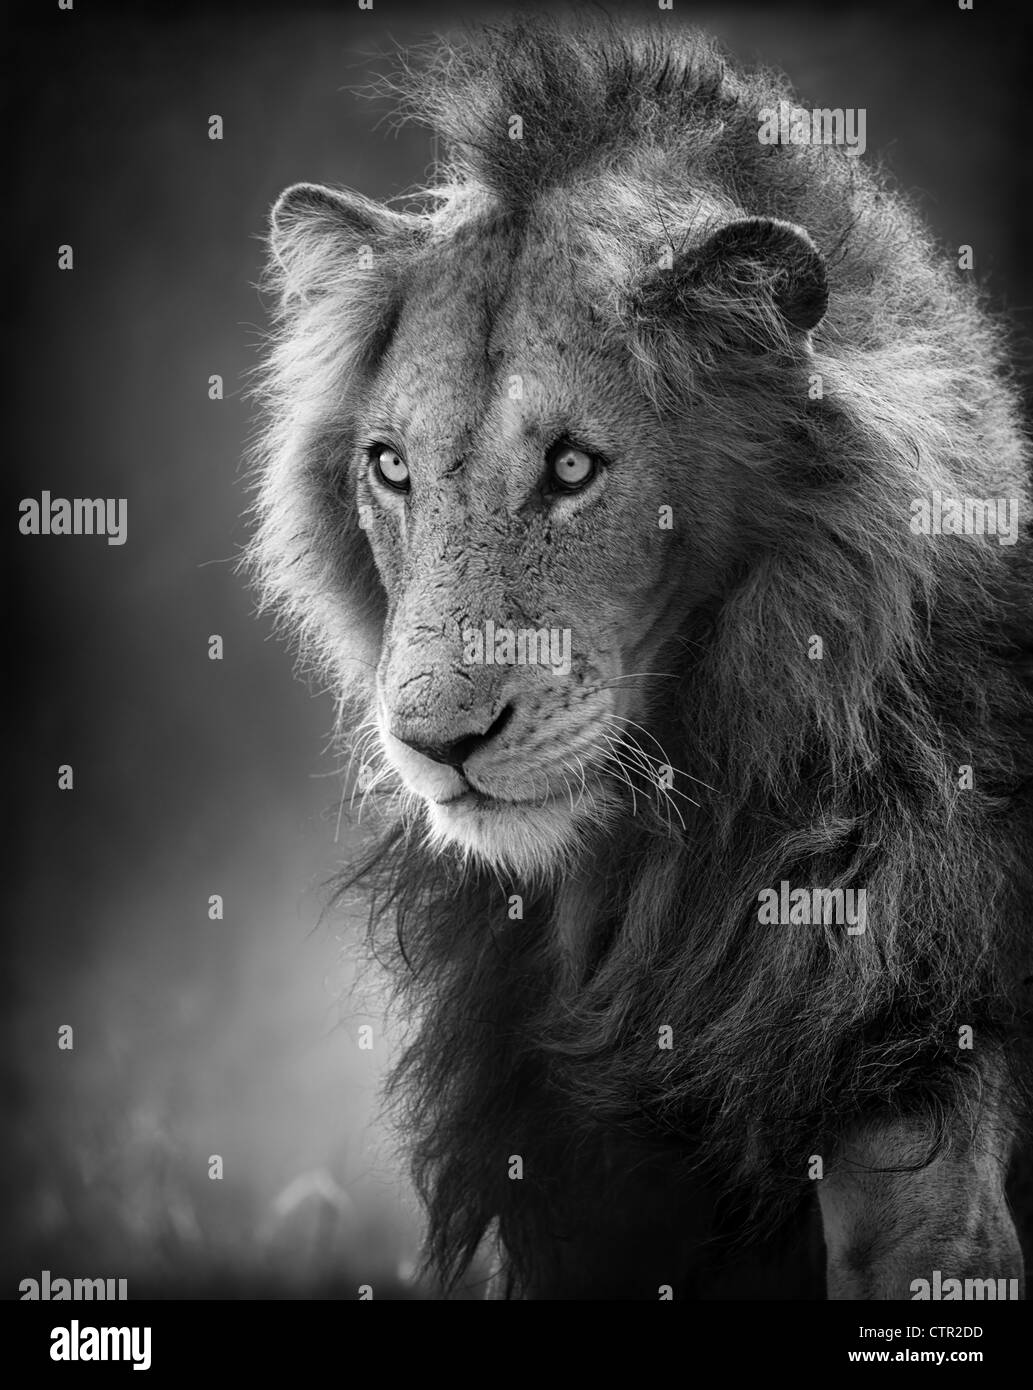 Homme Lion Portrait artistique (transformation) - Parc National Kruger - Afrique du Sud Banque D'Images